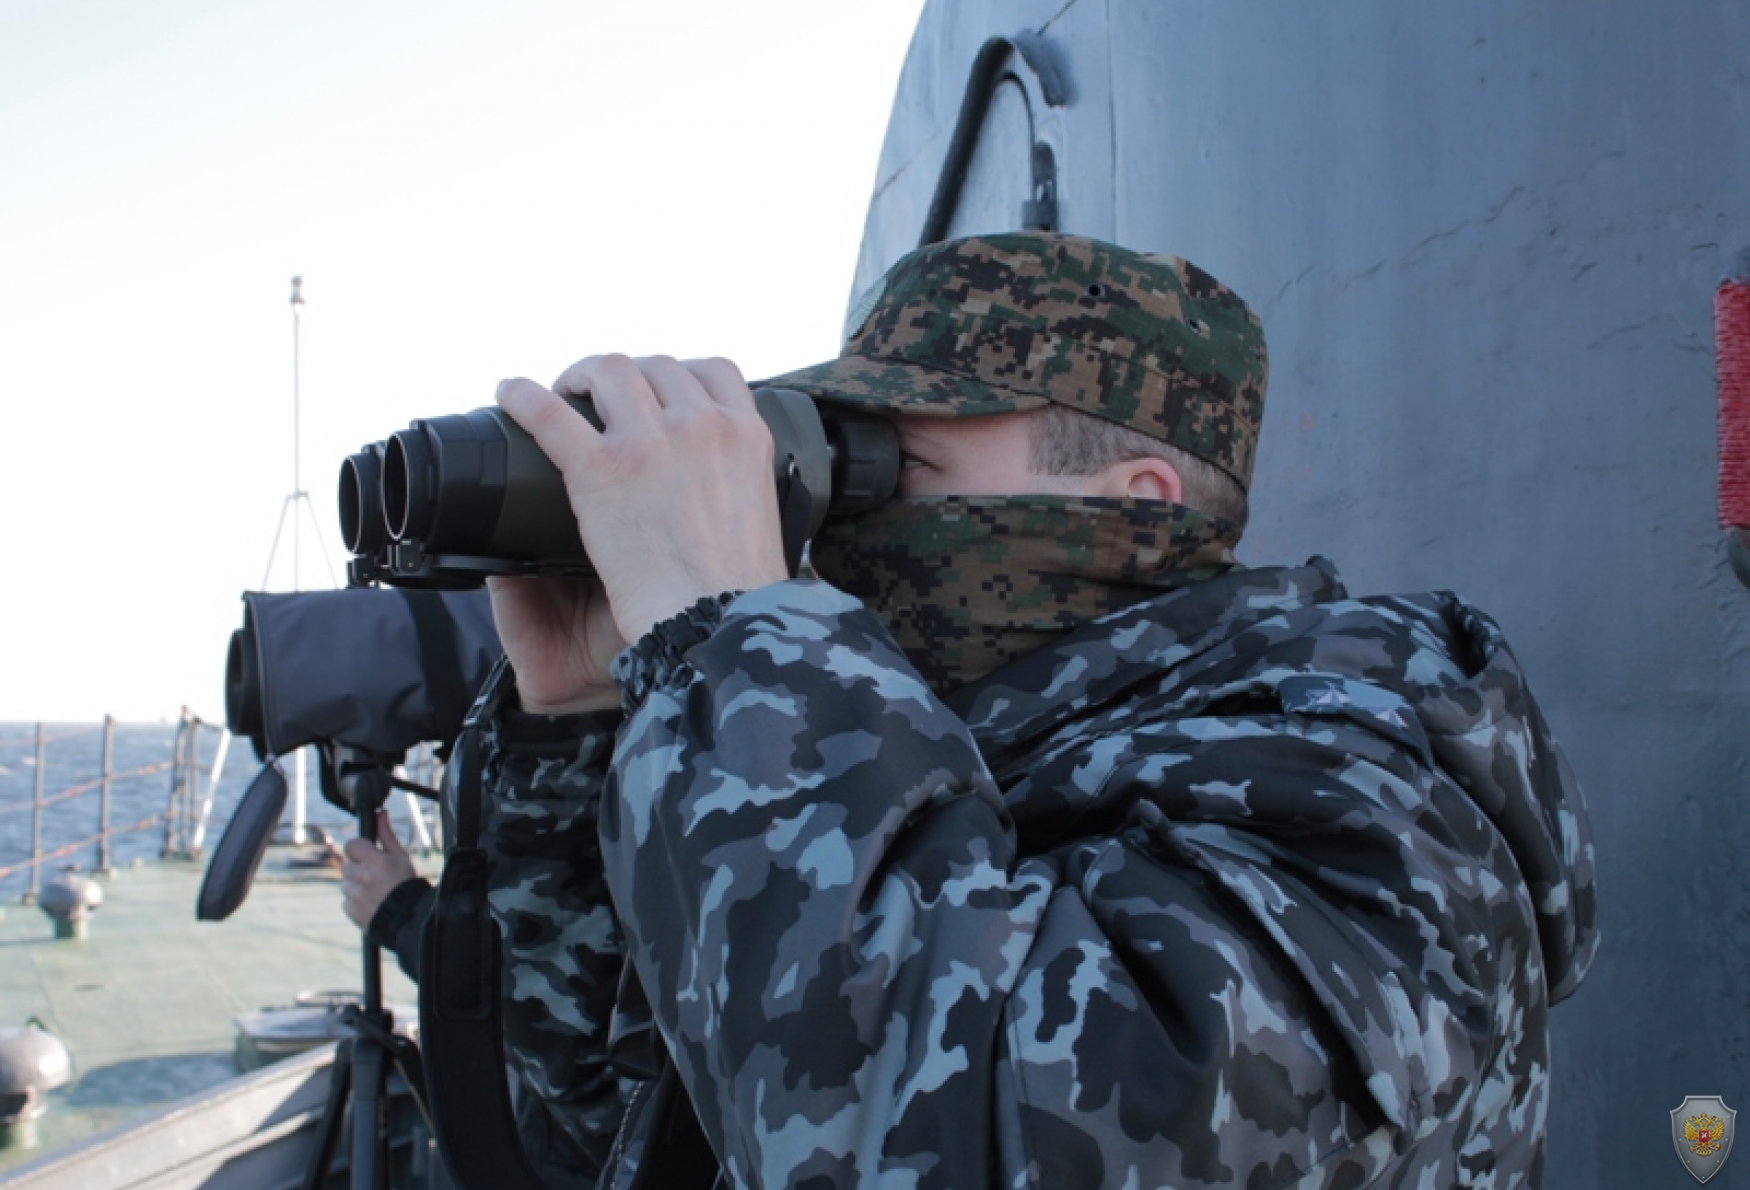 Антитеррористическое учение в Балтийском море «Вихрь-2014». Калининградская область. 17-23 сентября 2014 года